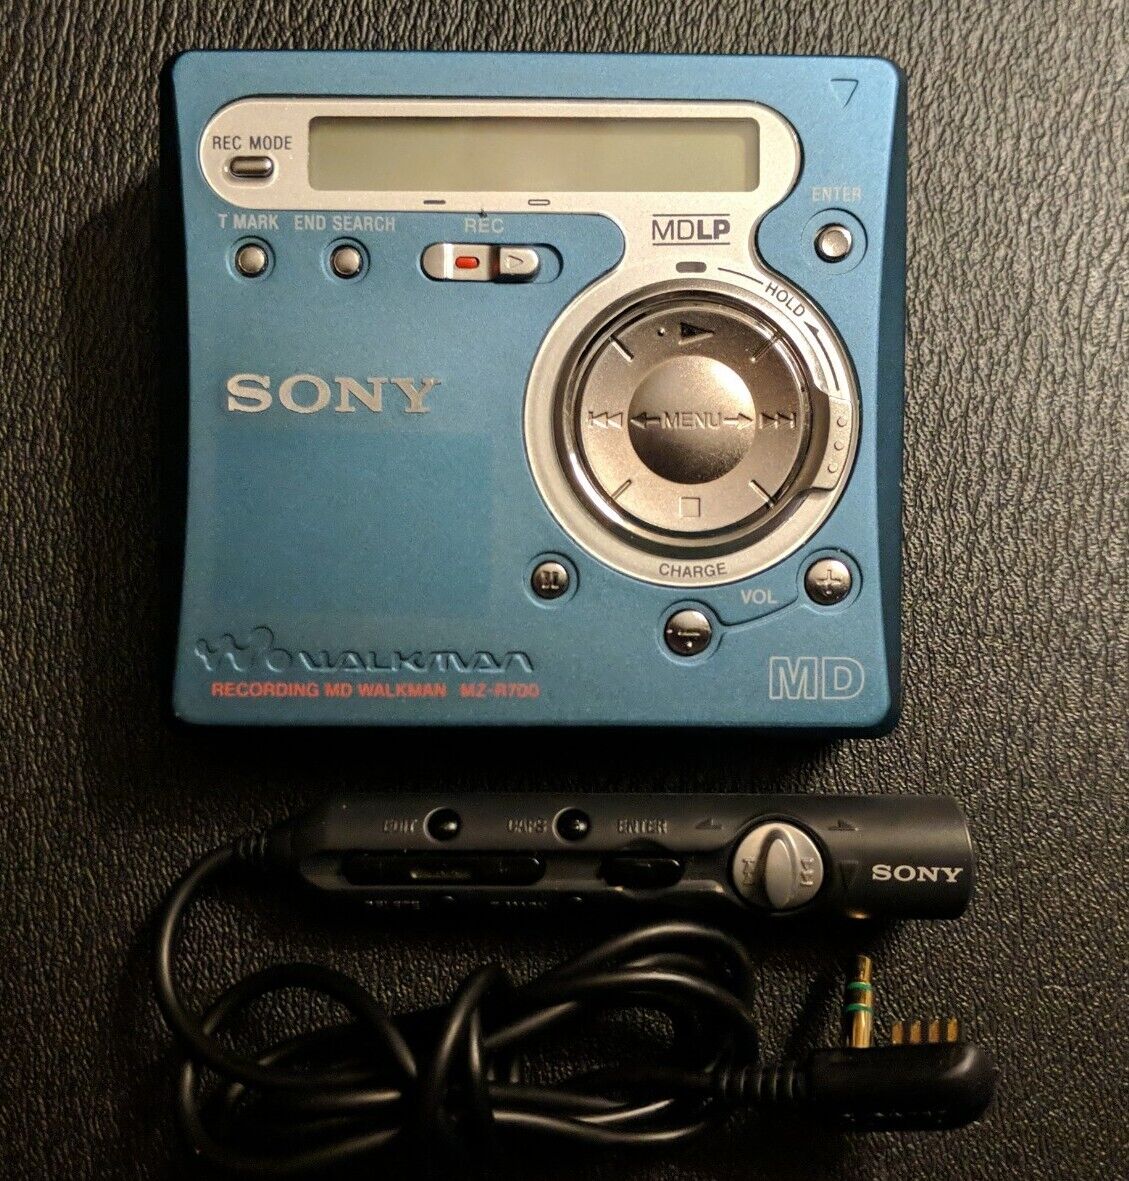 Sony Mz-r700 Md Recording Minidisc Walkman With Rm-mz4r Remote - Works Great!